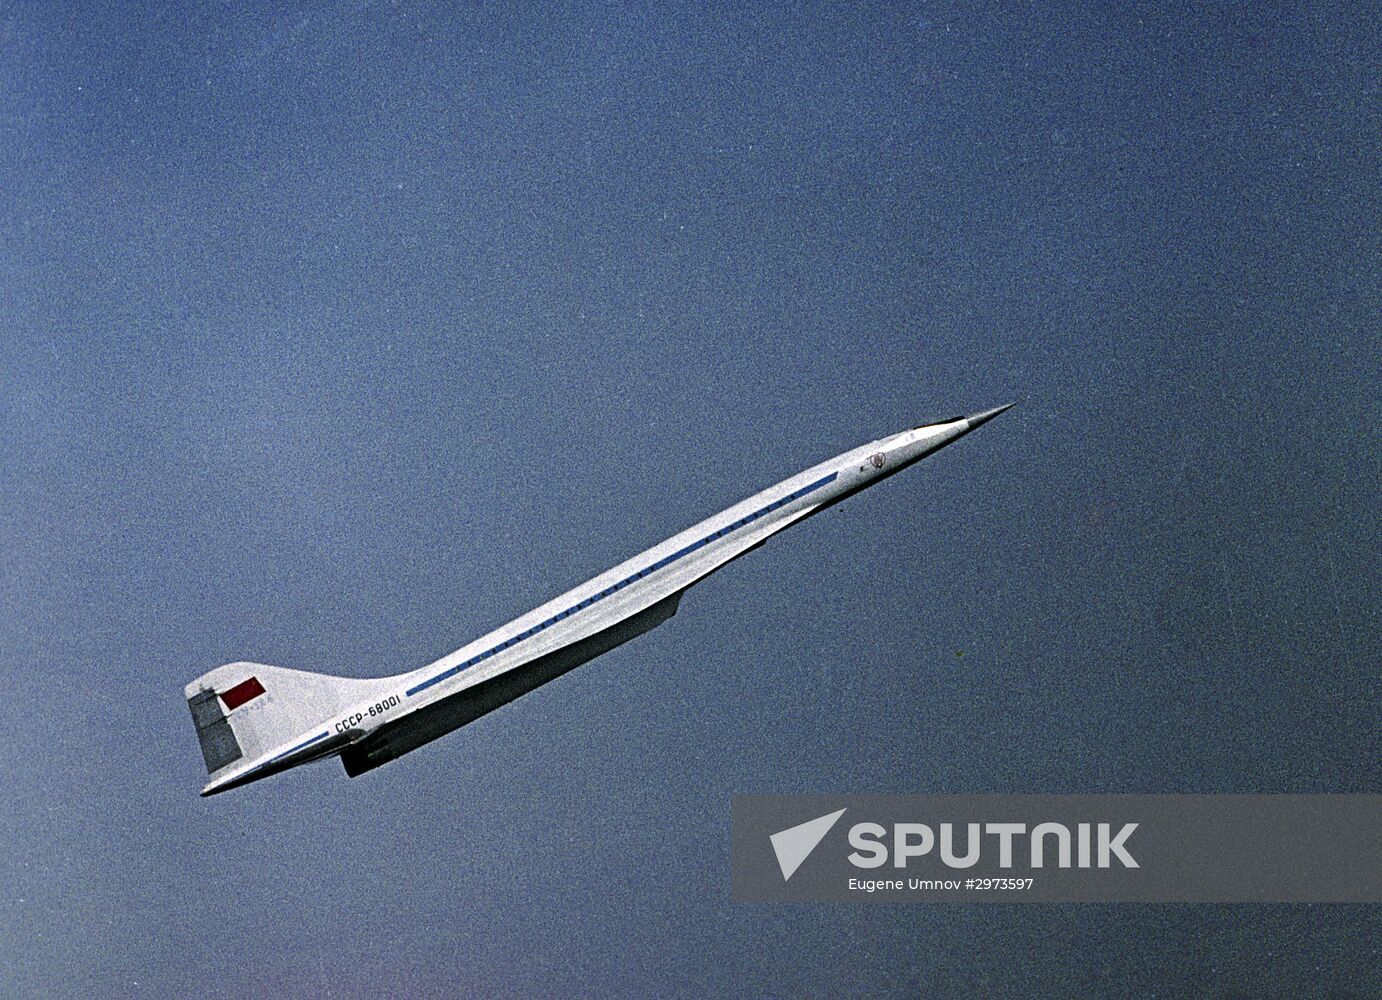 TU-144 Soviet supersonic passenger aircraft